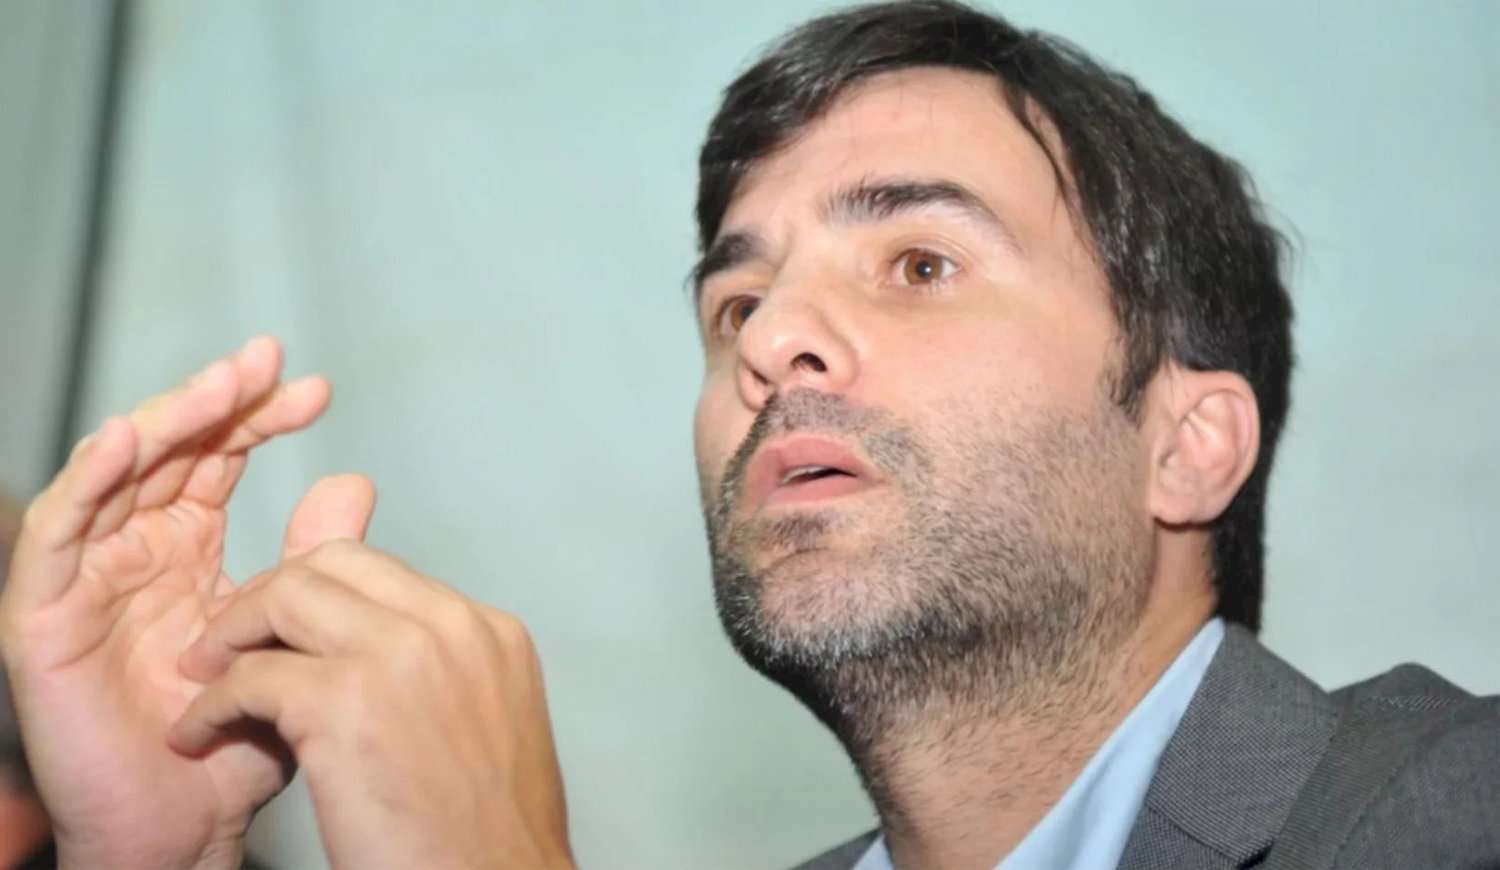 “Nos toman el pelo”: Desde Castelli, el intendente Echarren criticó a Milei tras su discurso por cadena nacional